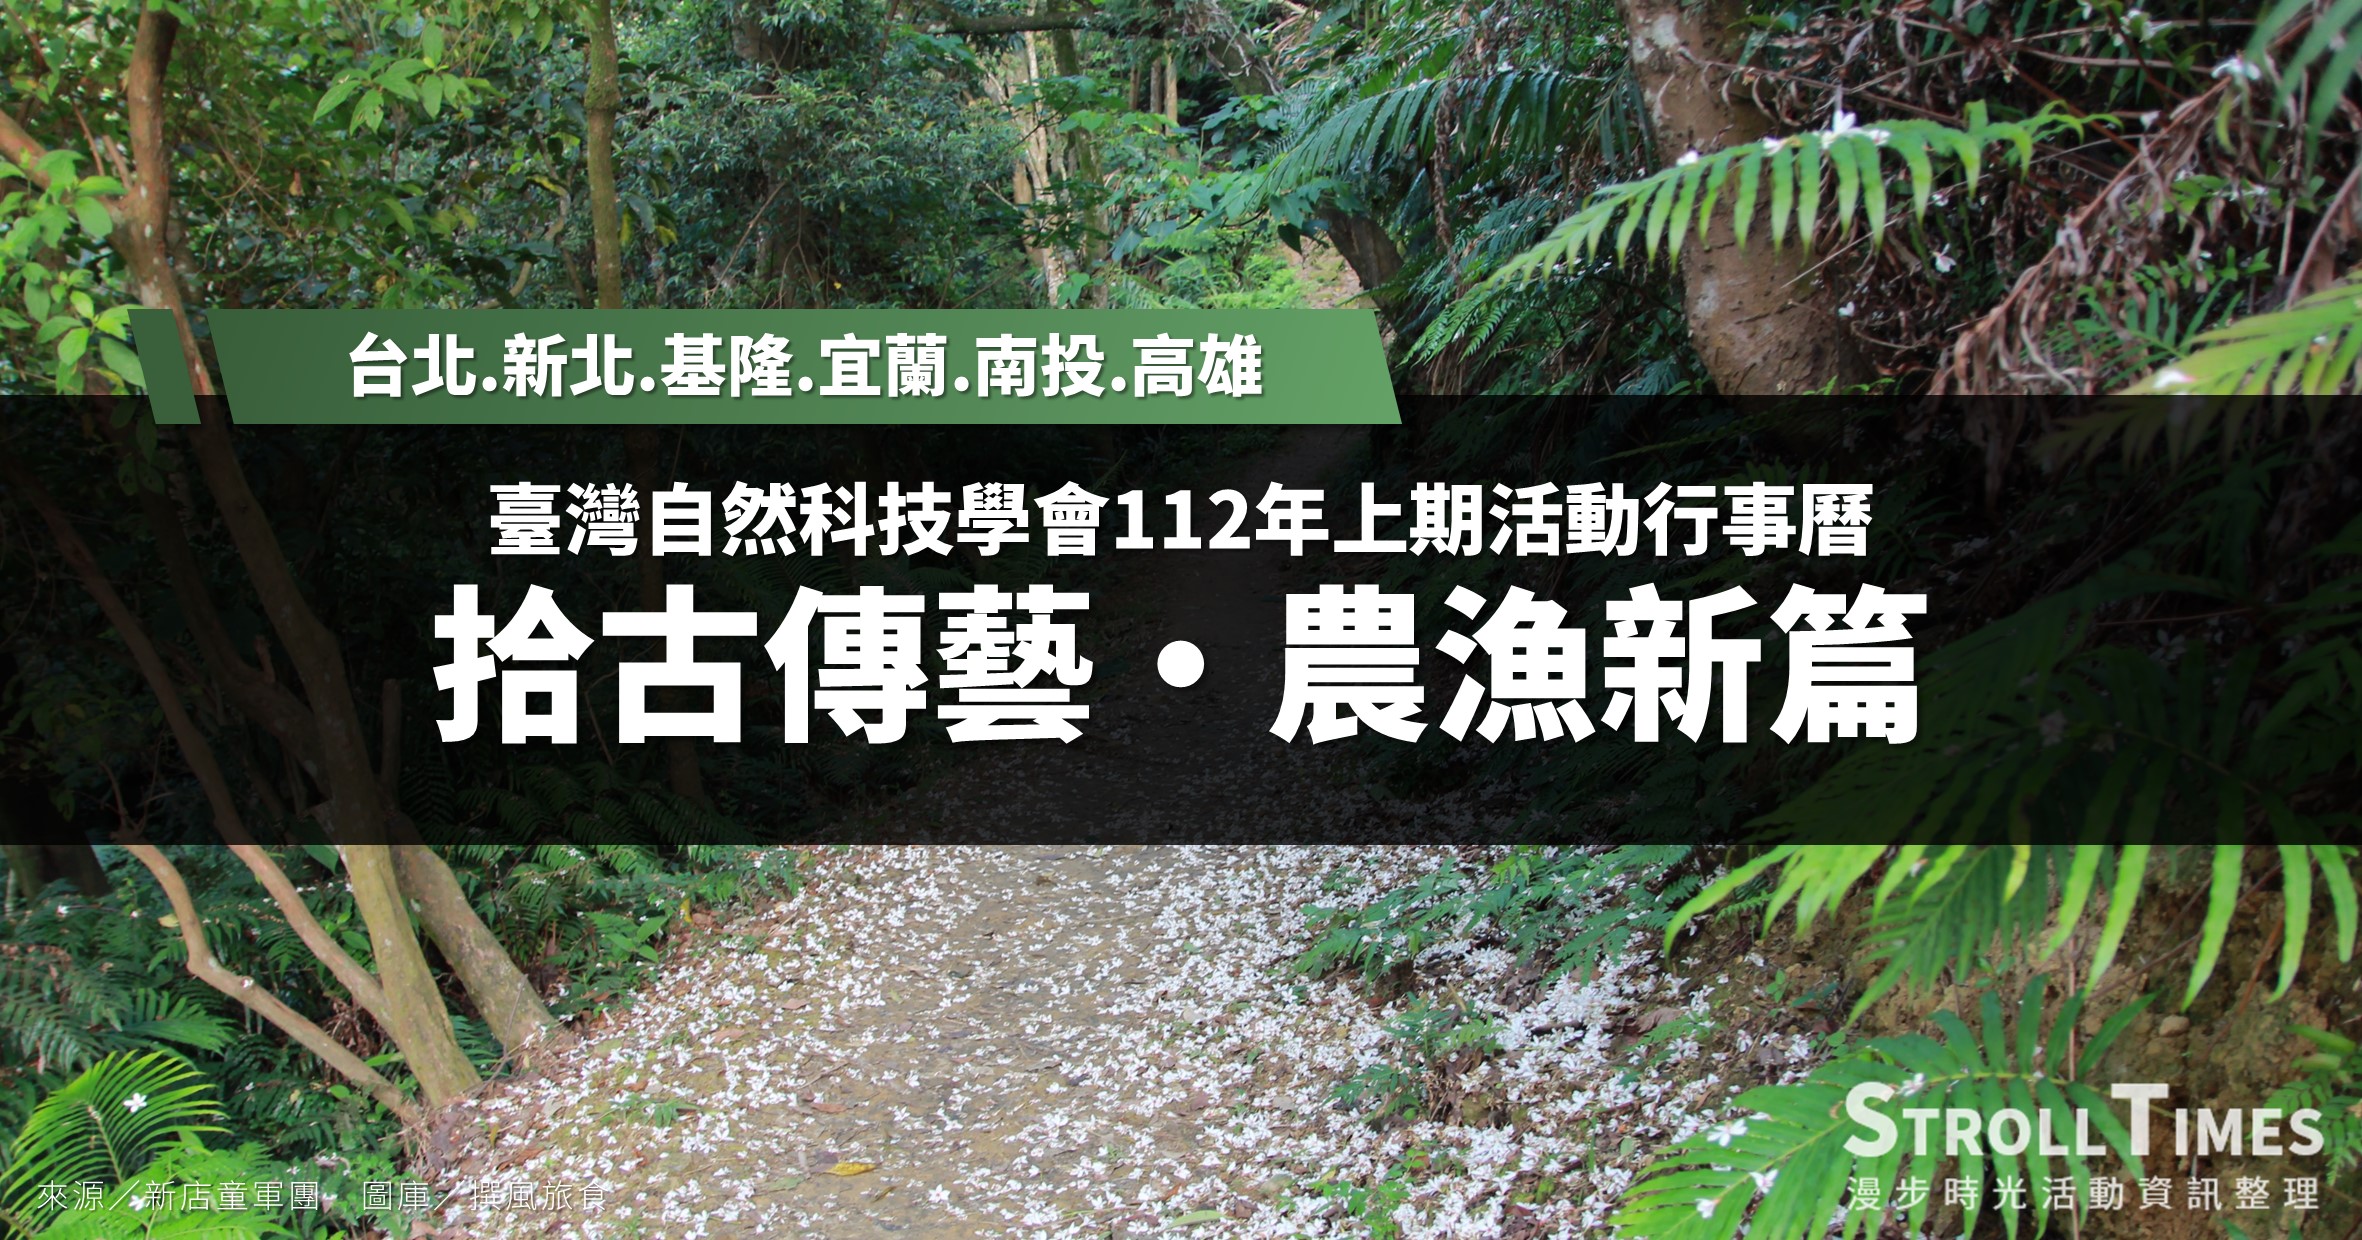 臺灣自然科技學會活動》112年上期活動行事曆 @漫步時光